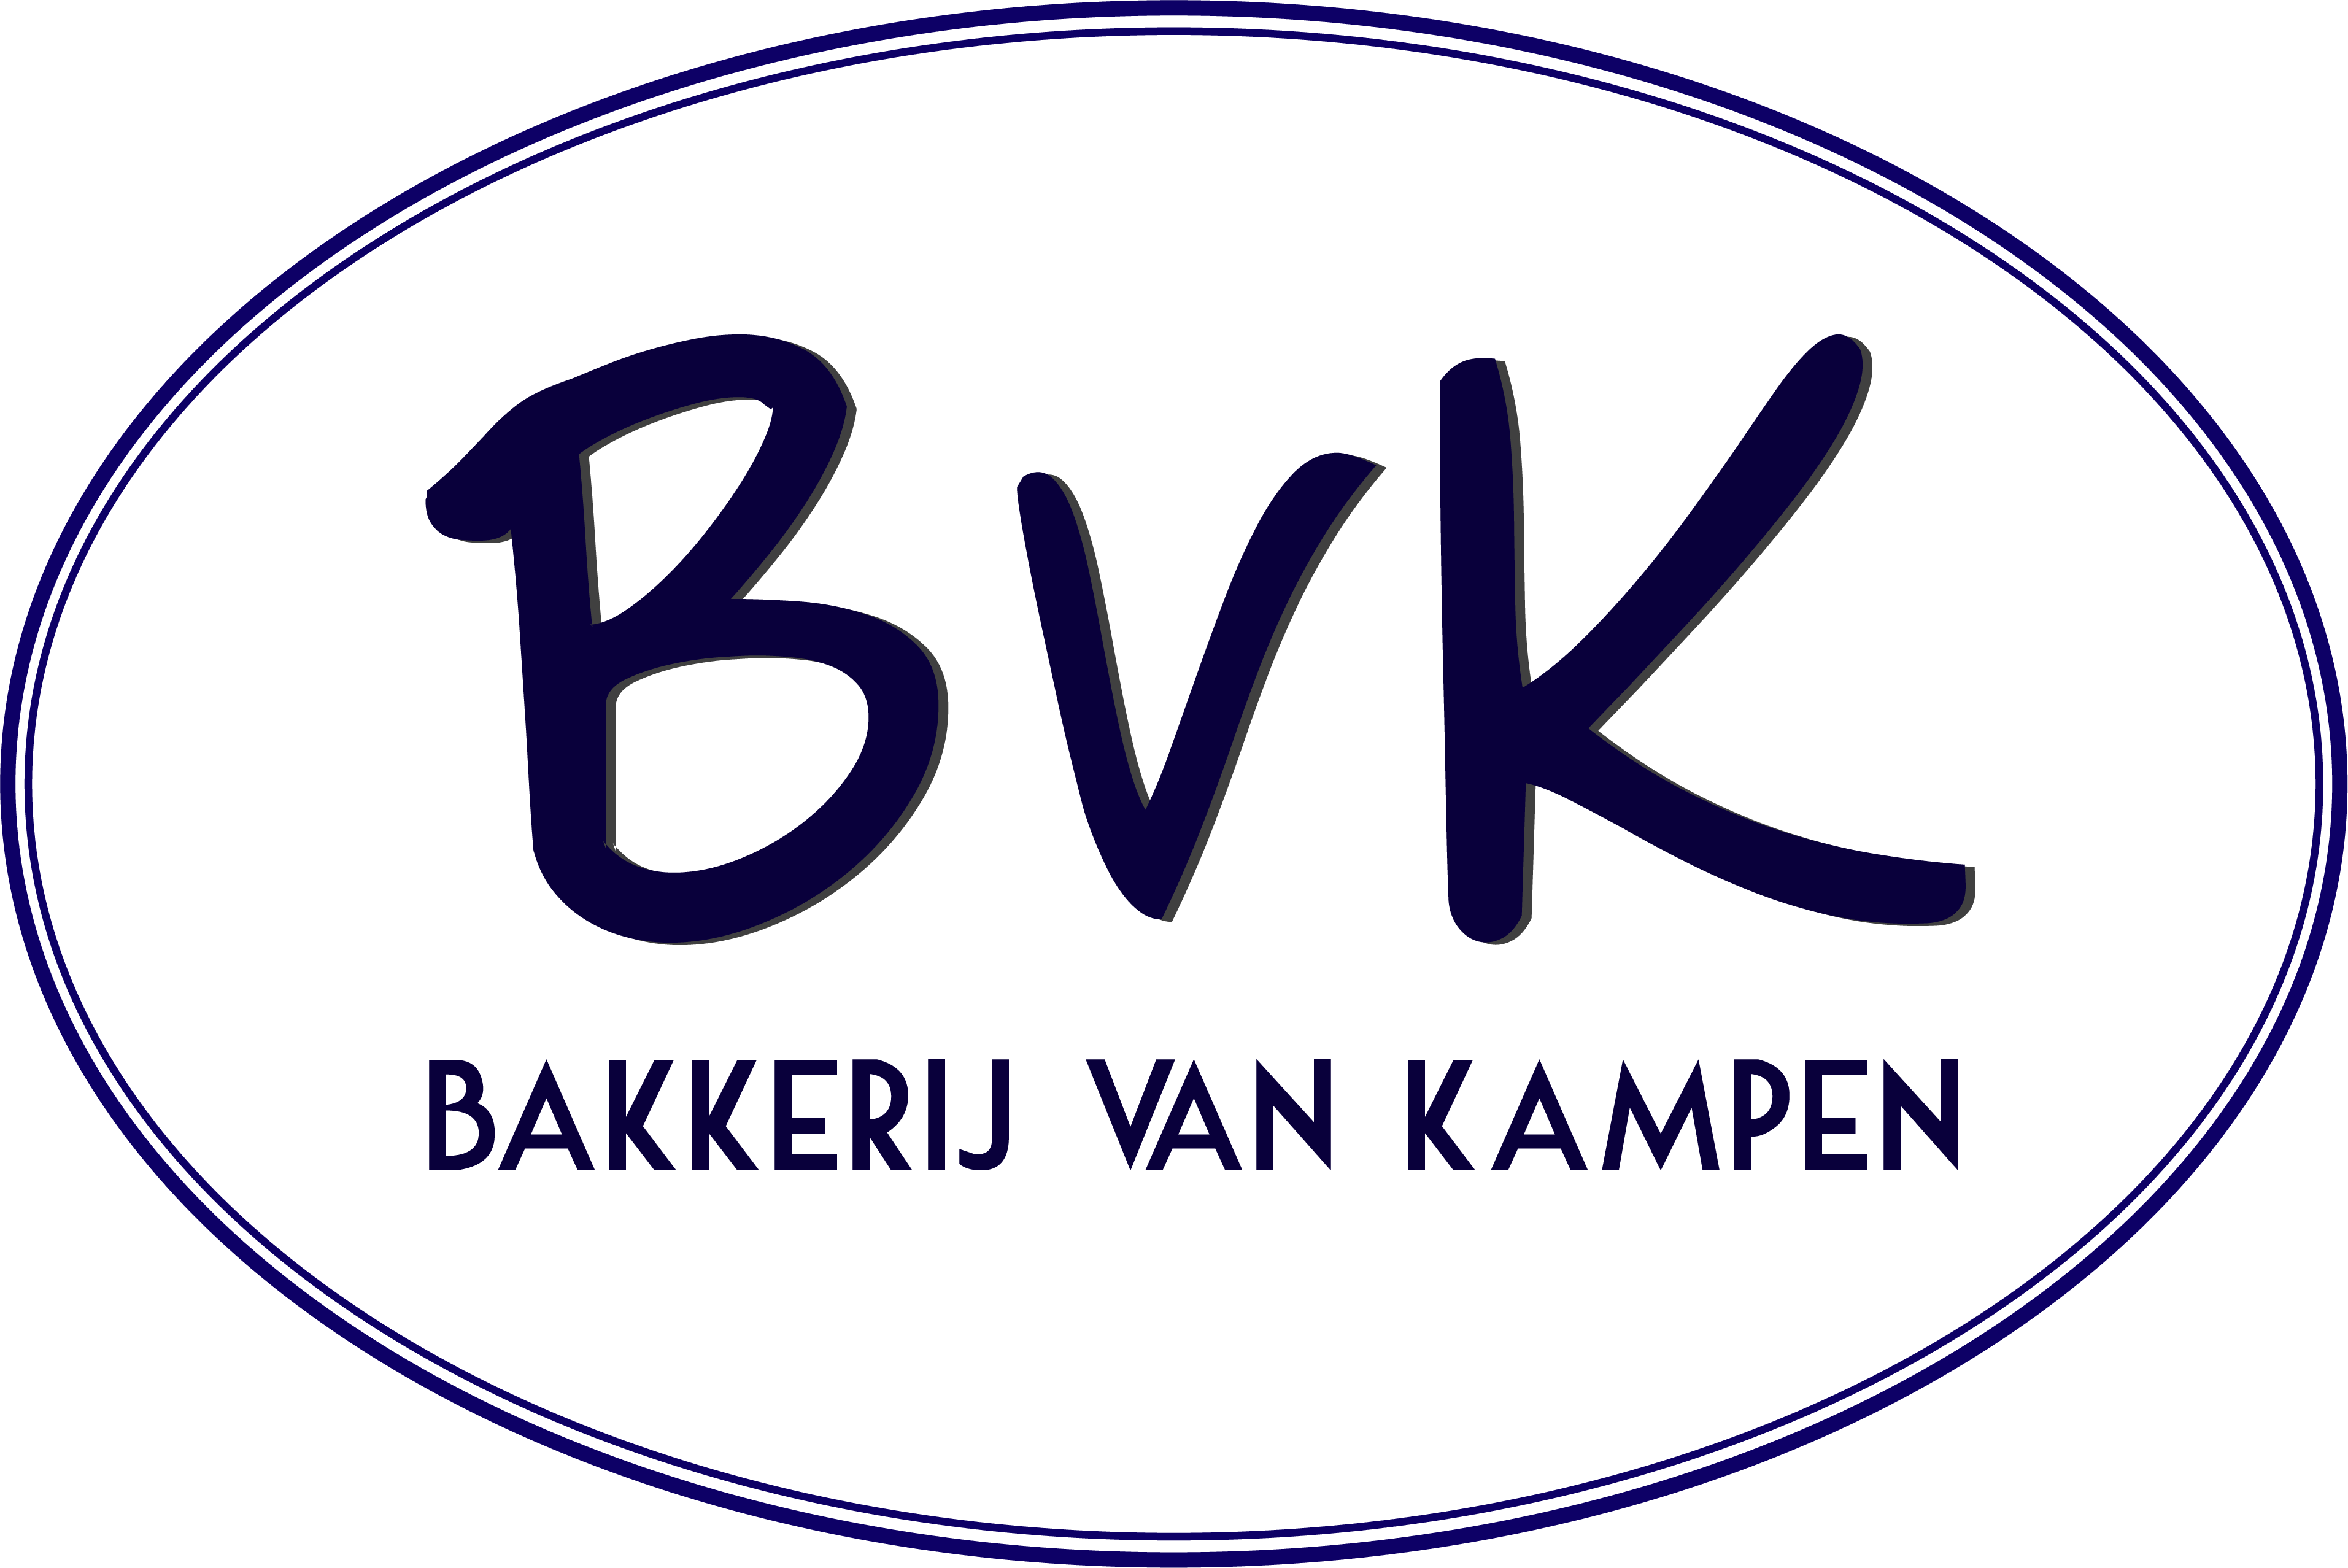 Bakkerij Van Kampen